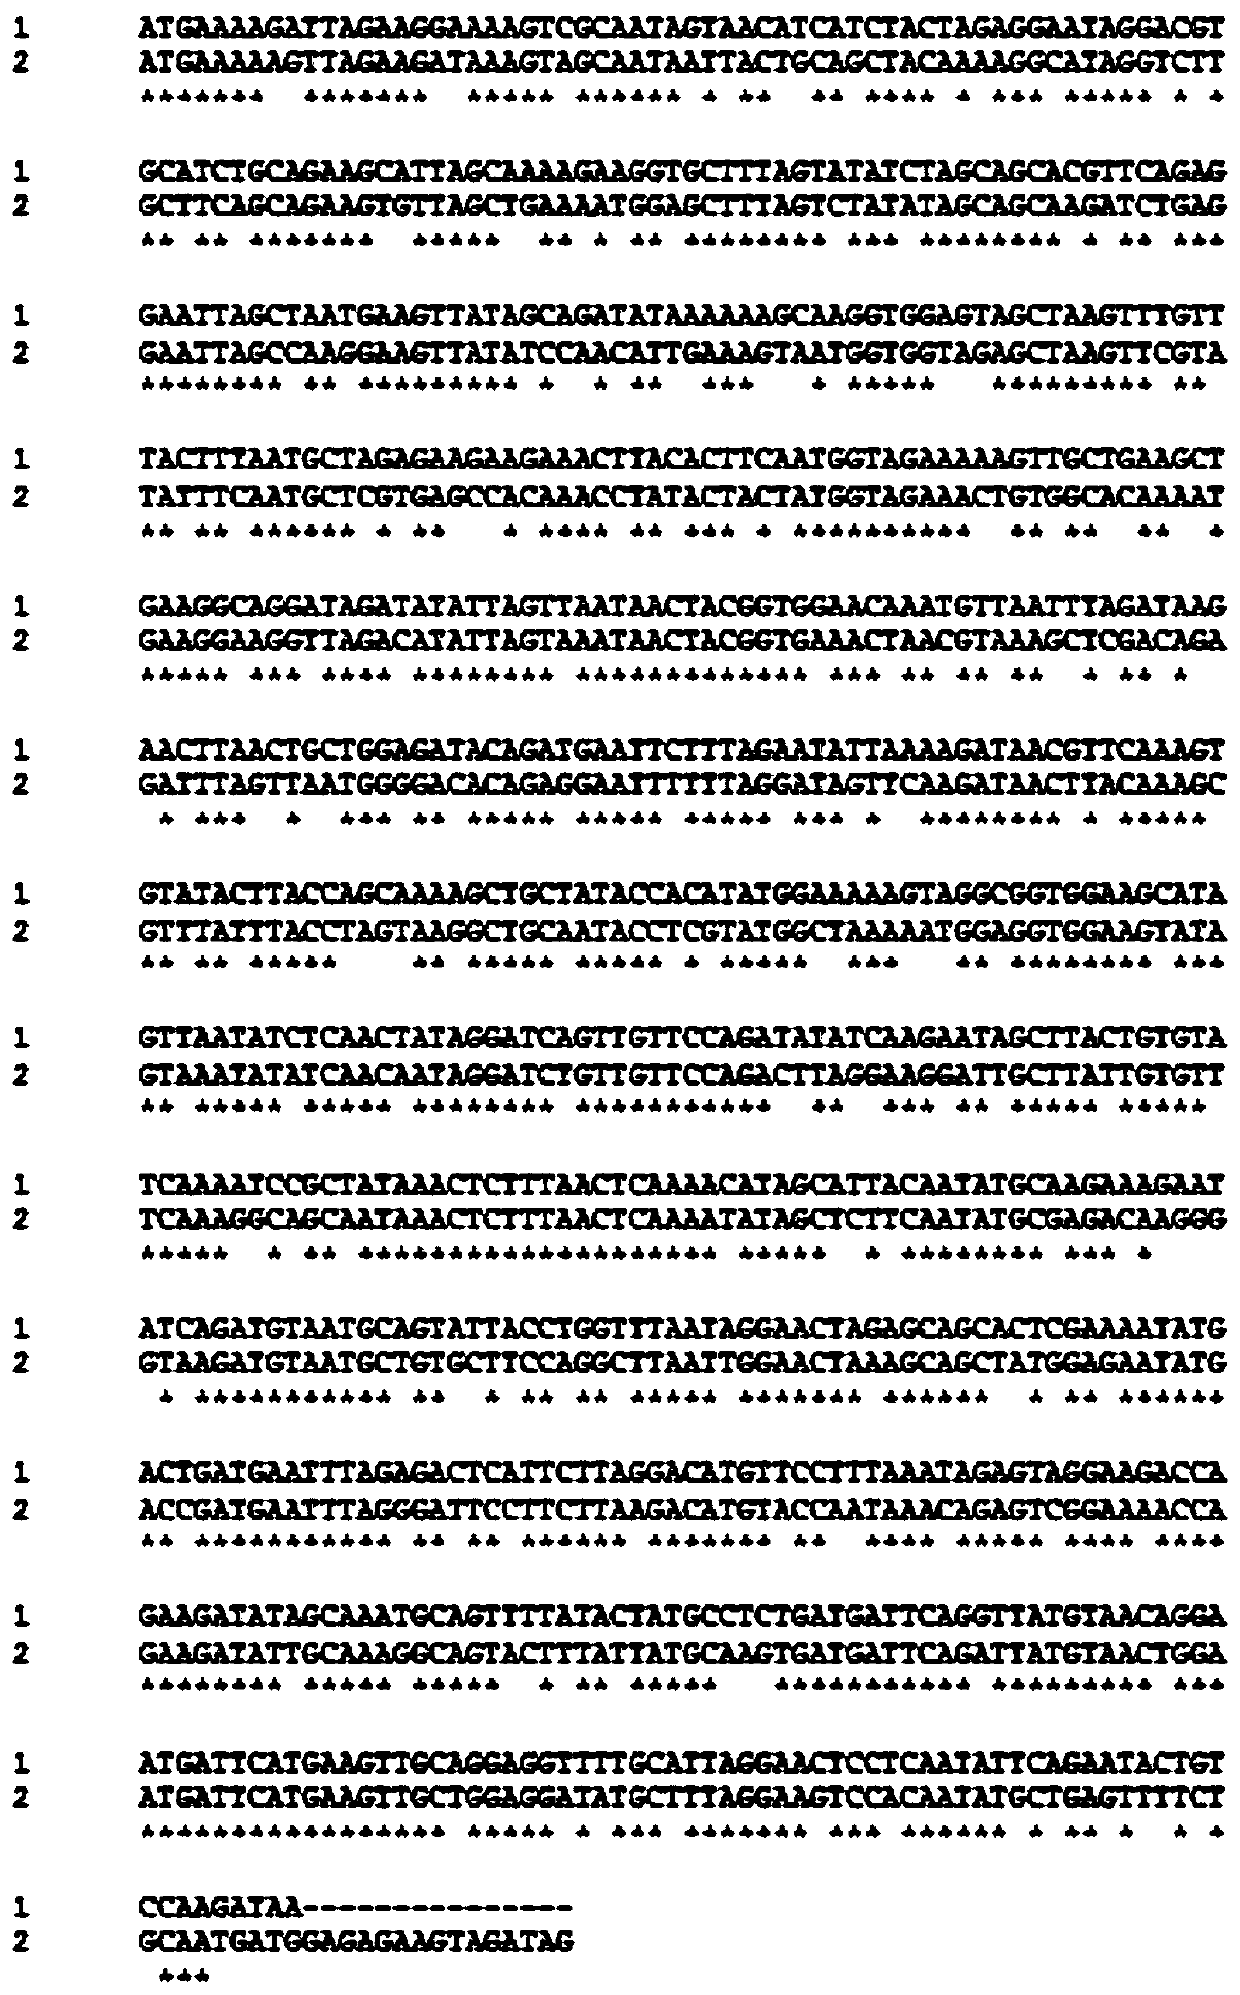 7α-hydroxysteroid dehydrogenase gene s1-a-1